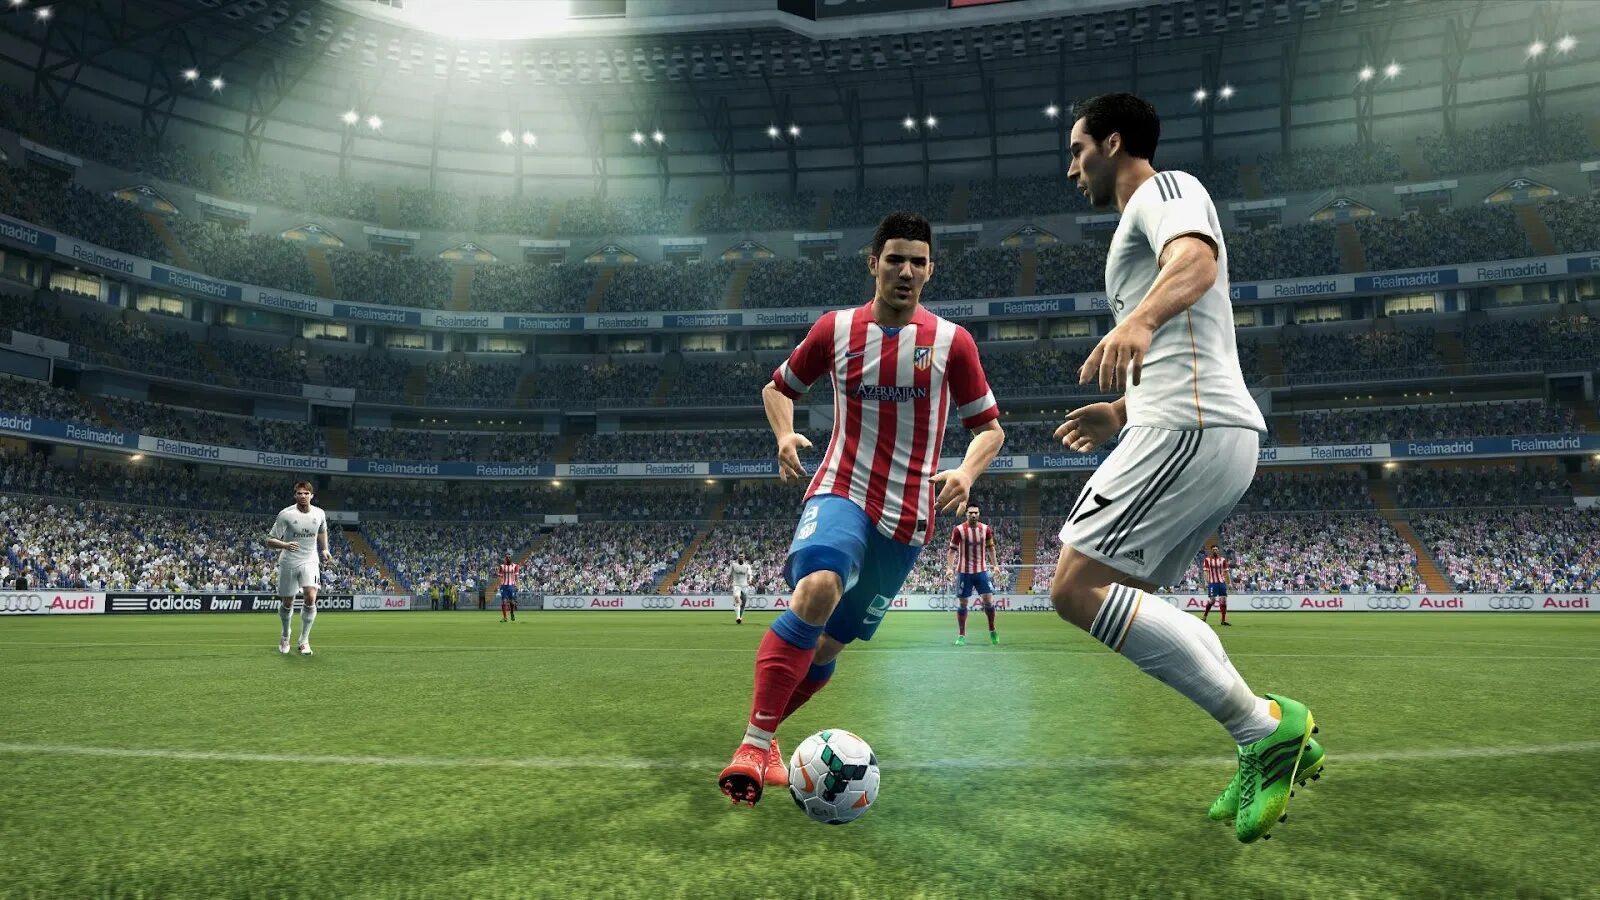 Pro Evolution Soccer 13 1c. PES 2013 / Pro Evolution Soccer 2013. PLAYSTATION PES 2013. Pro Evolution Soccer 5. Игр футбол 2013